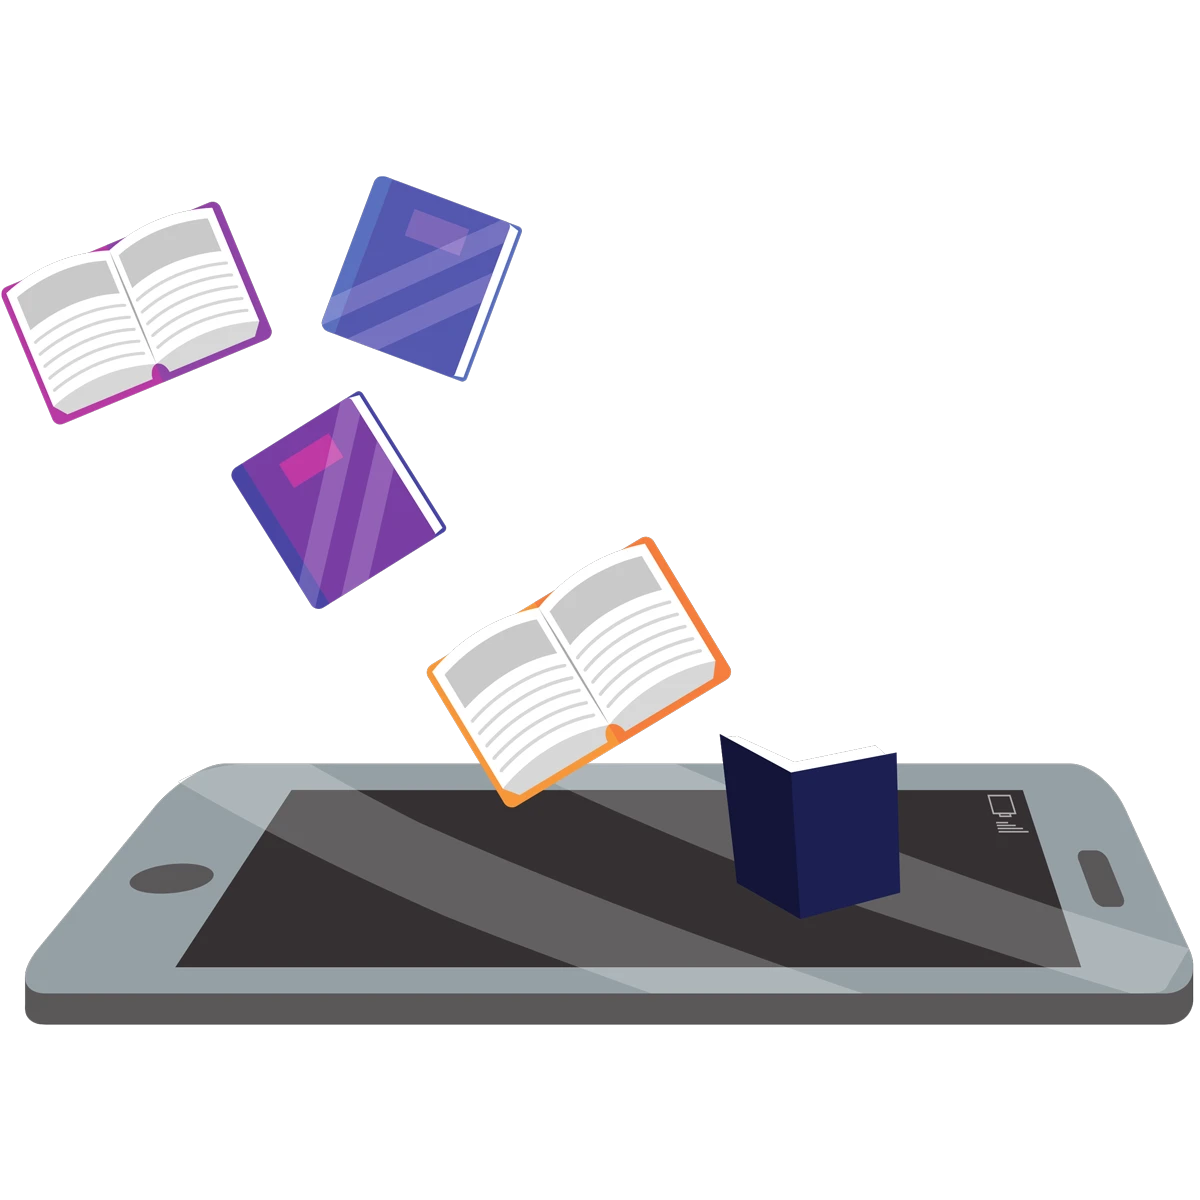 Animerad bild på en mobiltelefon med böcker ovanför, ska symbolisera "boka föreläsare" och kunskap.